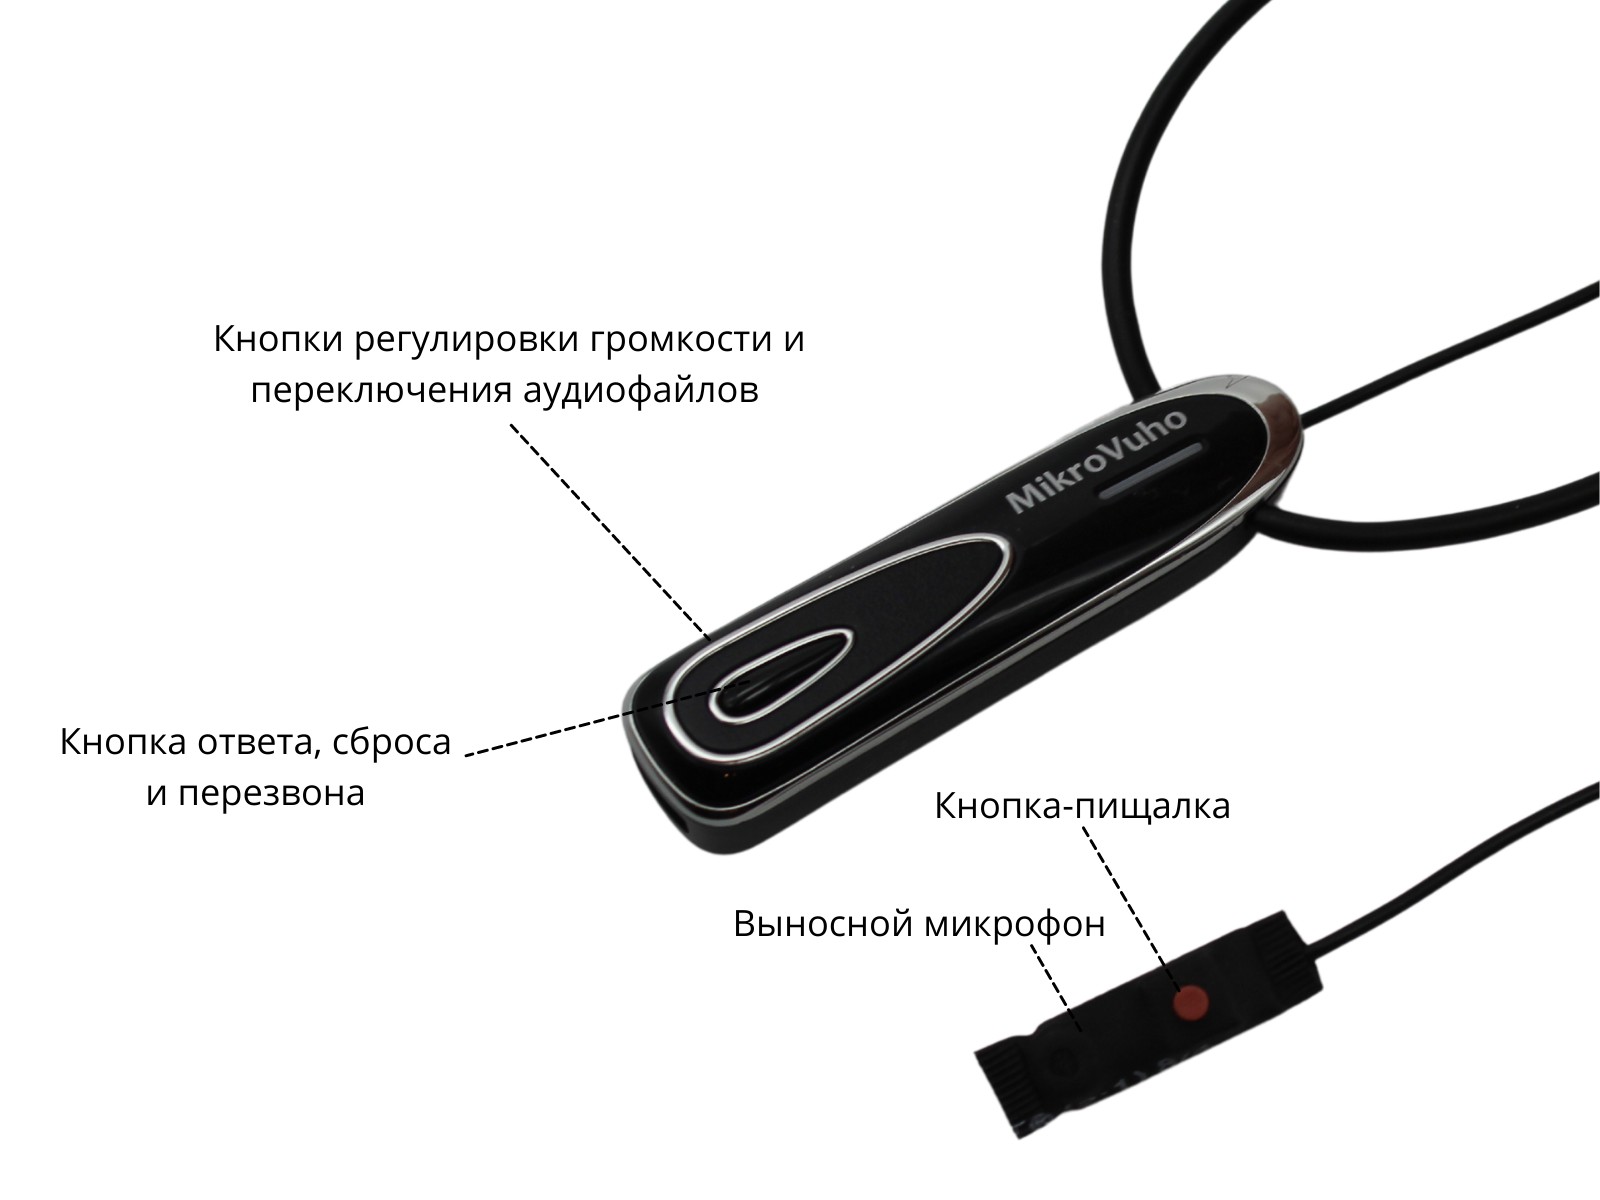 Универсальная гарнитура Bluetooth Premier с капсулой  Nano 4 мм и магнитами 2 мм - изображение 18